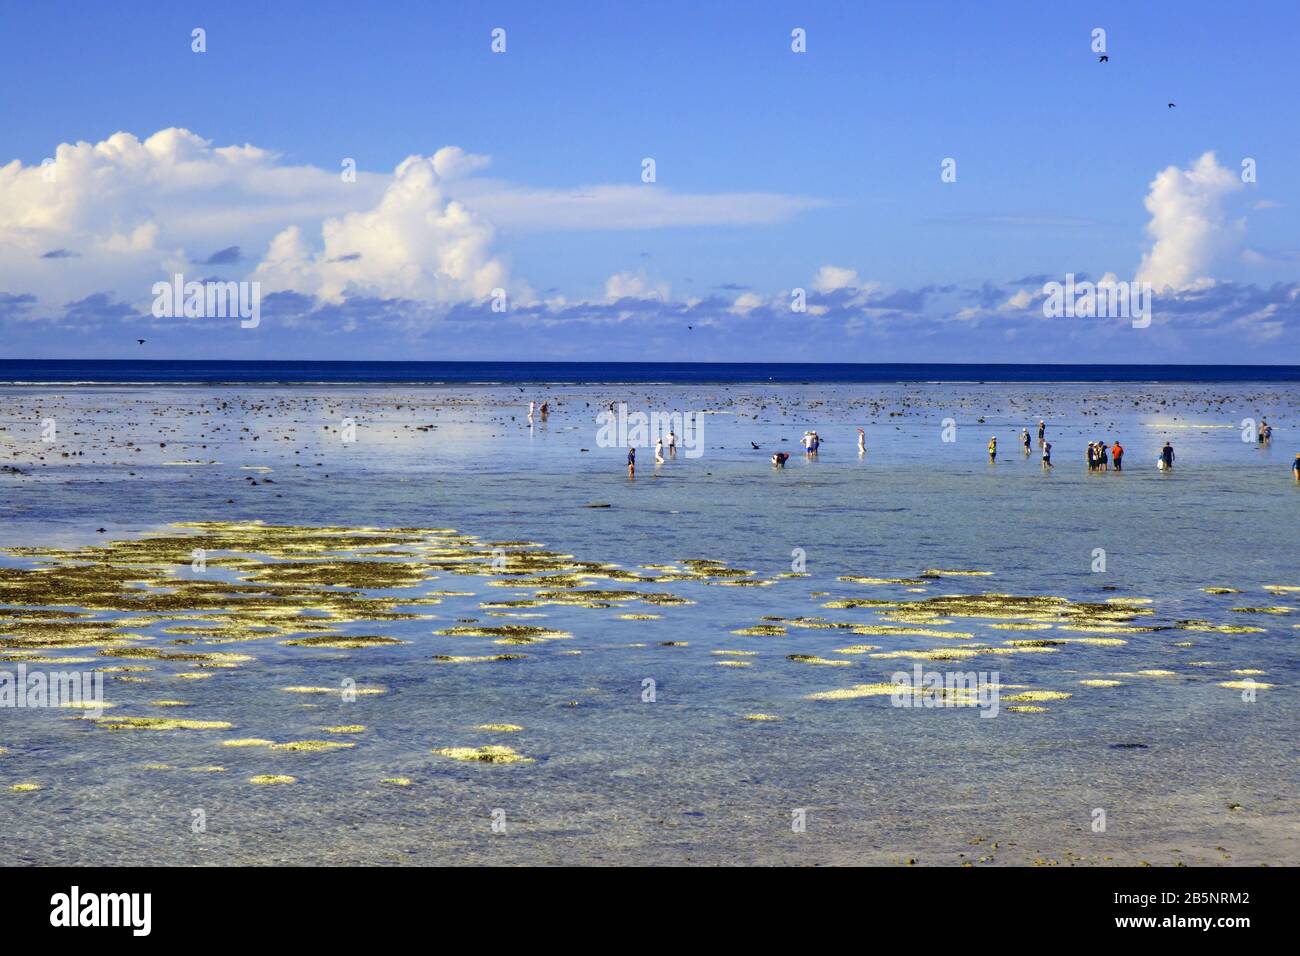 Persone che camminano sulla scogliera piatta con bassa marea con molti coralli sbiancati evidenti, Isola di Heron, Grande barriera Corallina, Queensland, Australia, Marzo 2020 Foto Stock